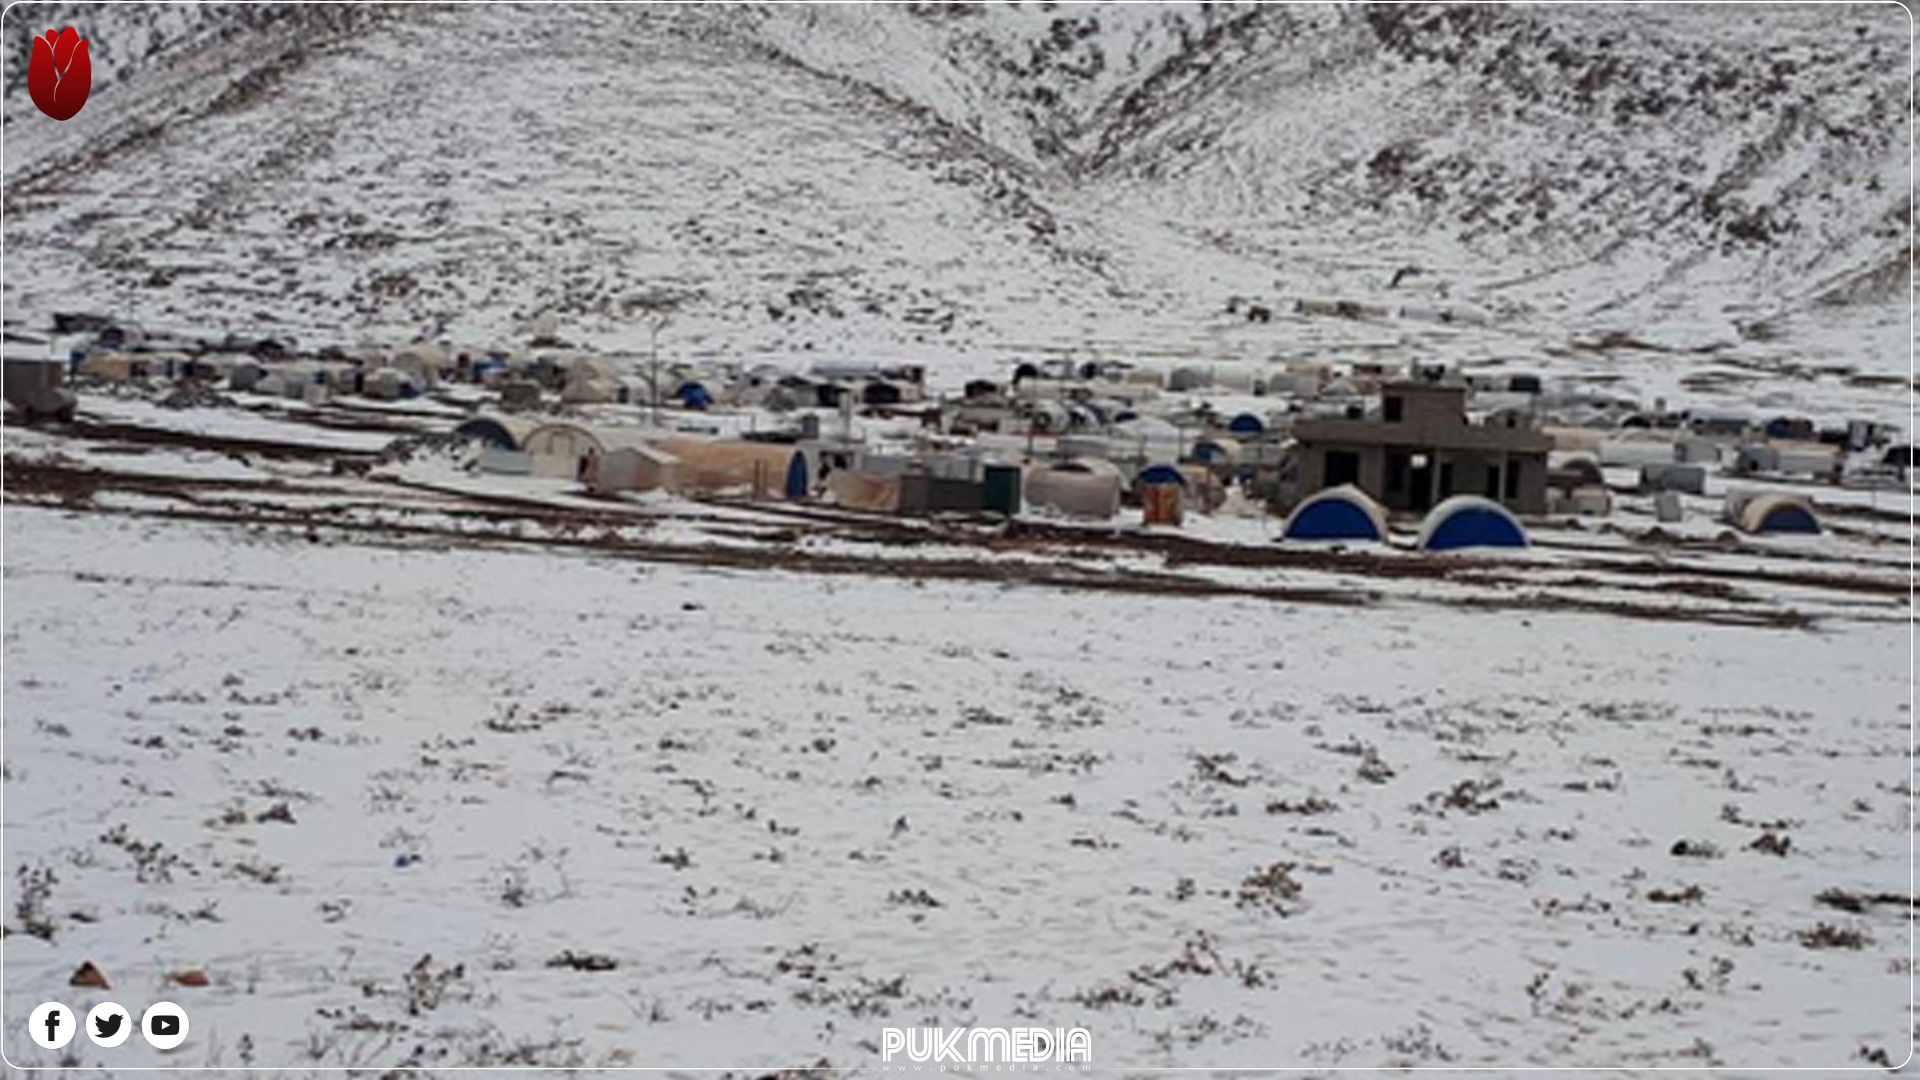   ـ صورة مؤرشفة ، مخيم سردشت في جبل شنكال 